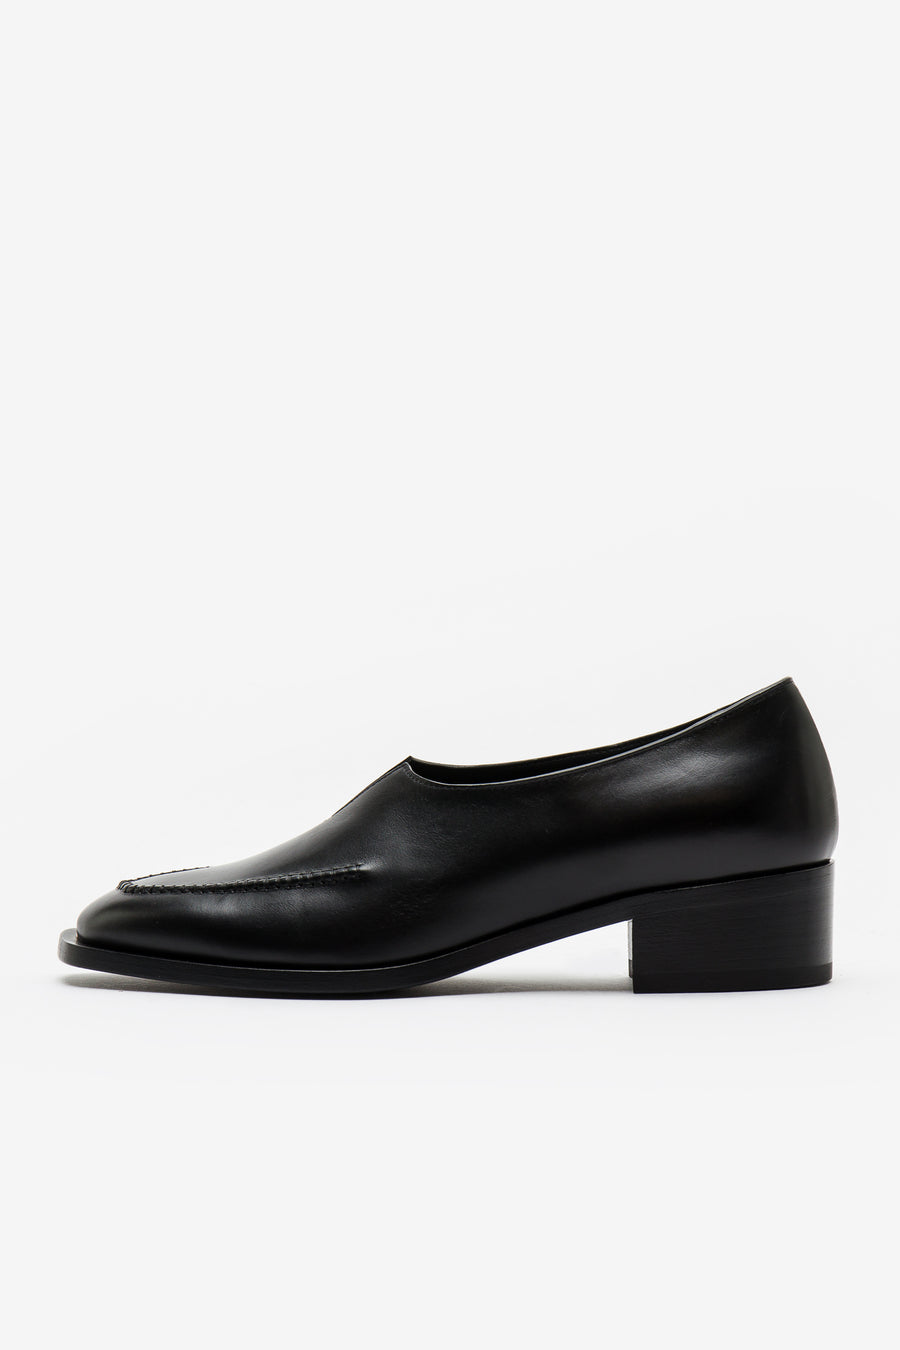 19,800円peter do black v loafers size 41